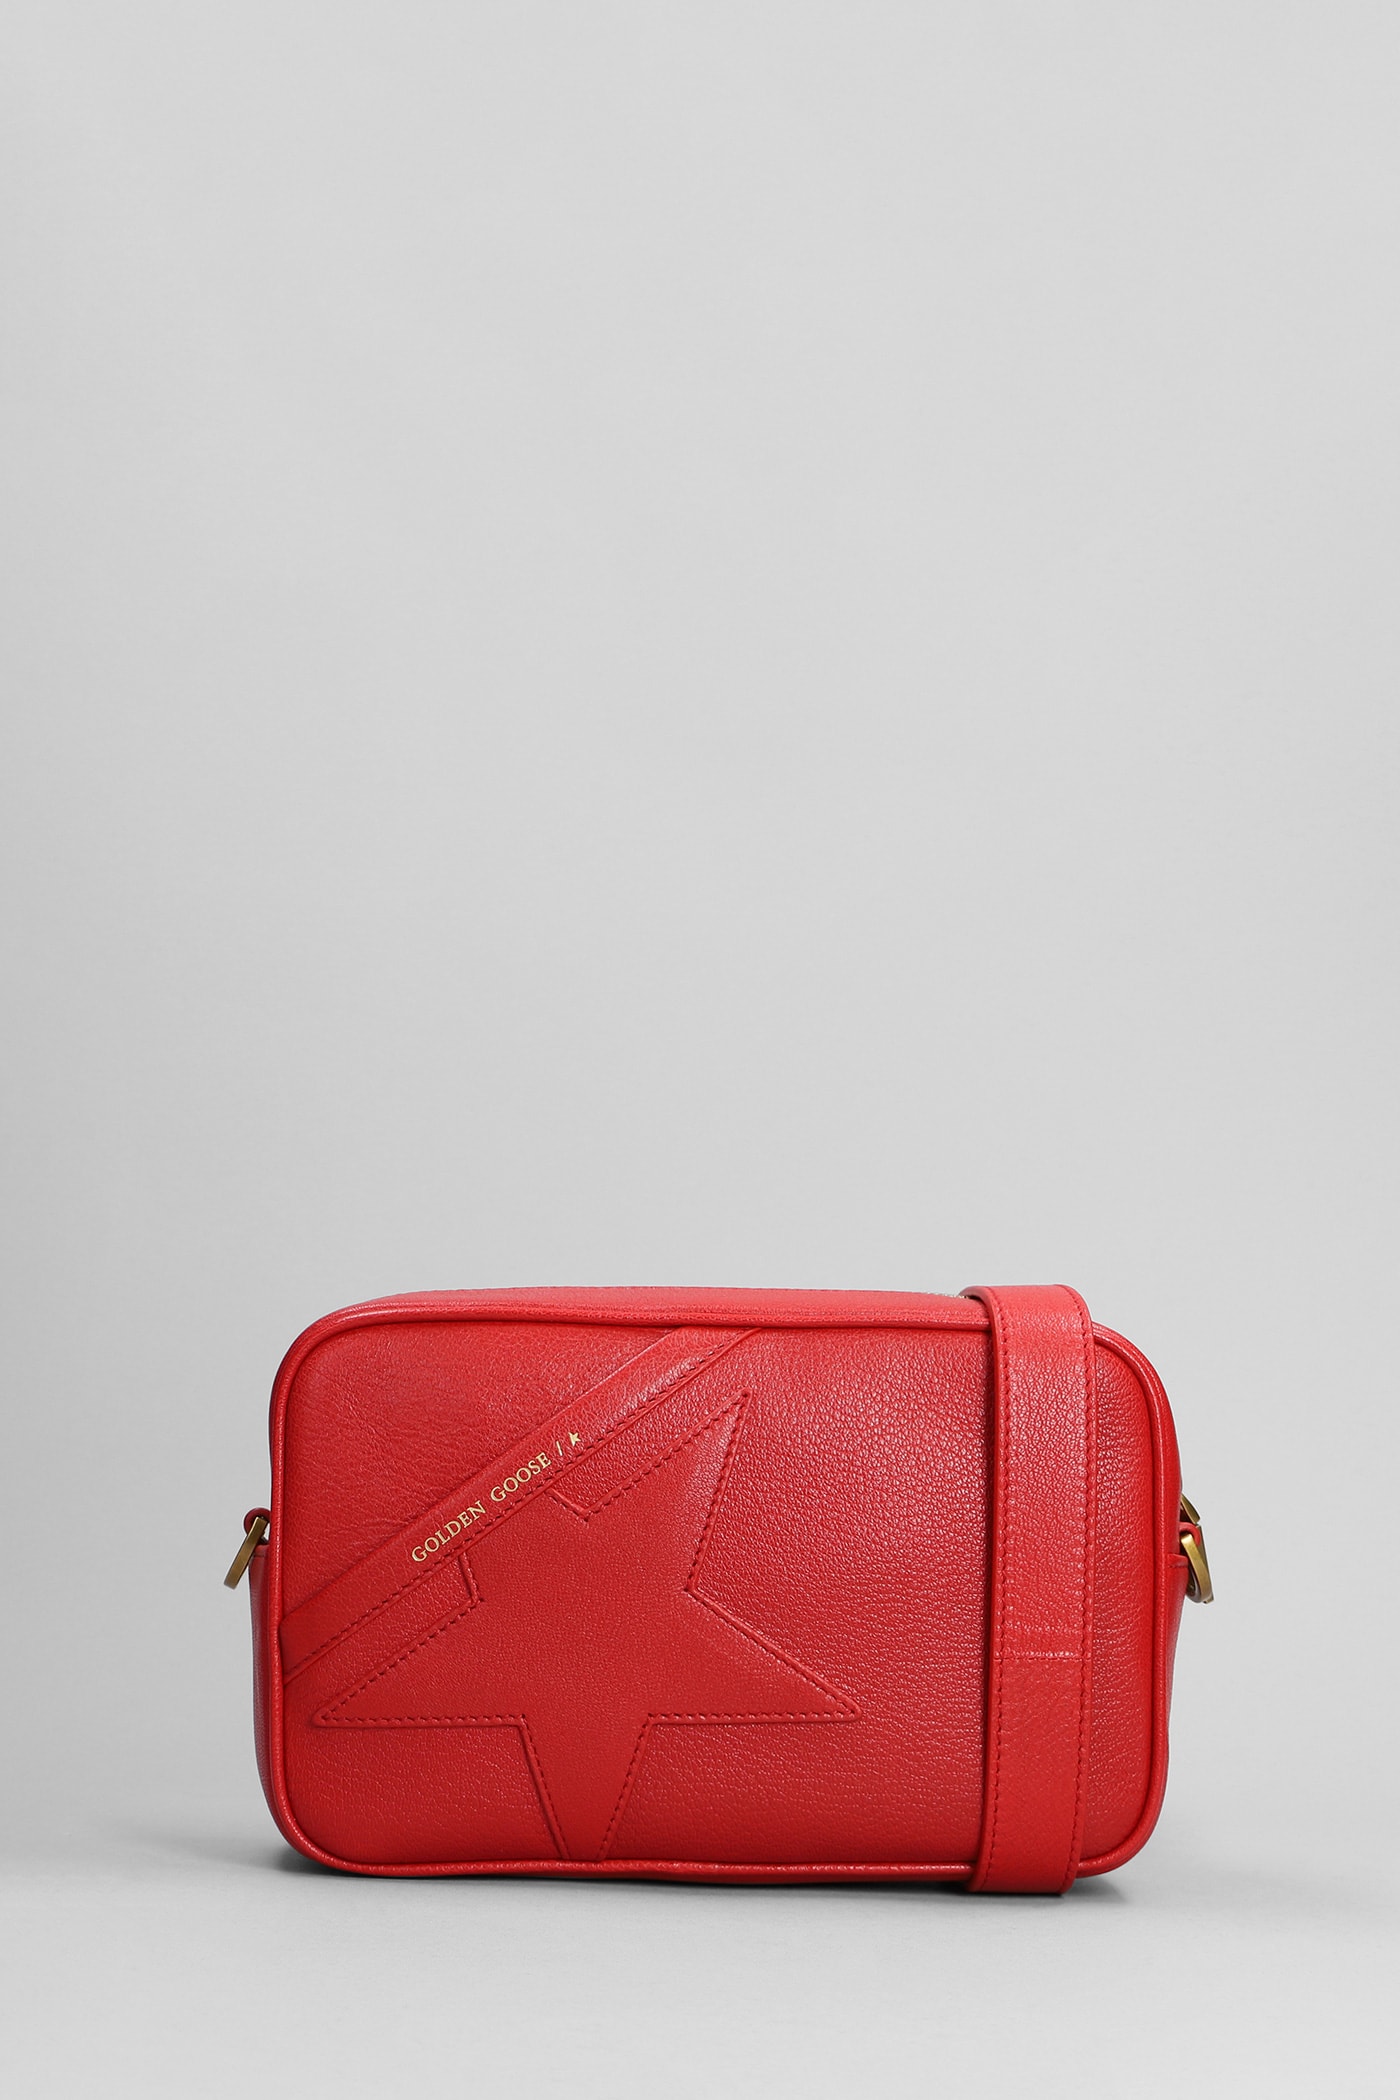 Golden Goose Shoulder Bag In Red Leather